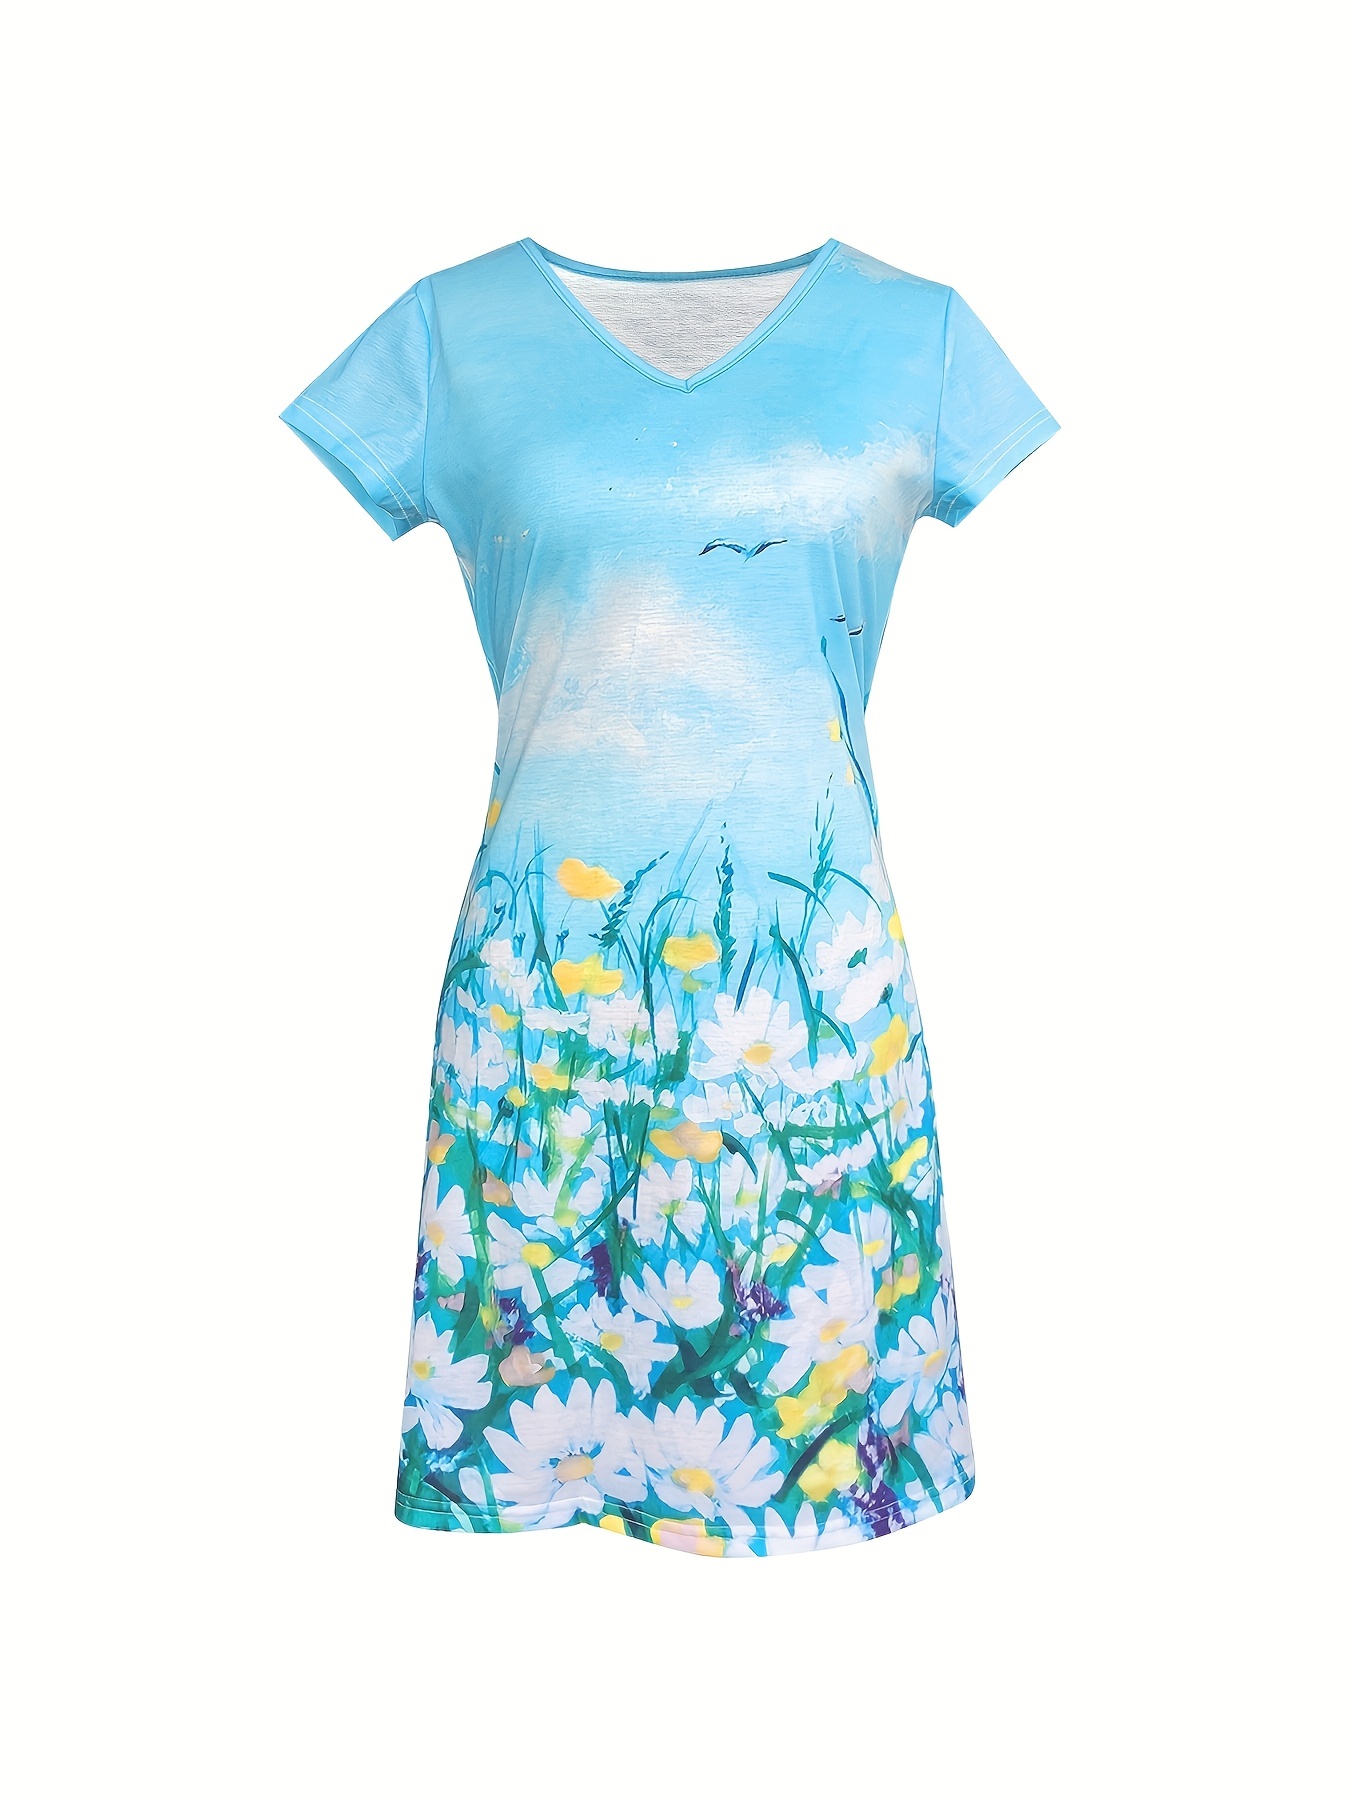 Sukienka z krótkim rękawem w kwiatowy wzór, casualowa sukienka midi z dekoltem w szpic, odzież damska